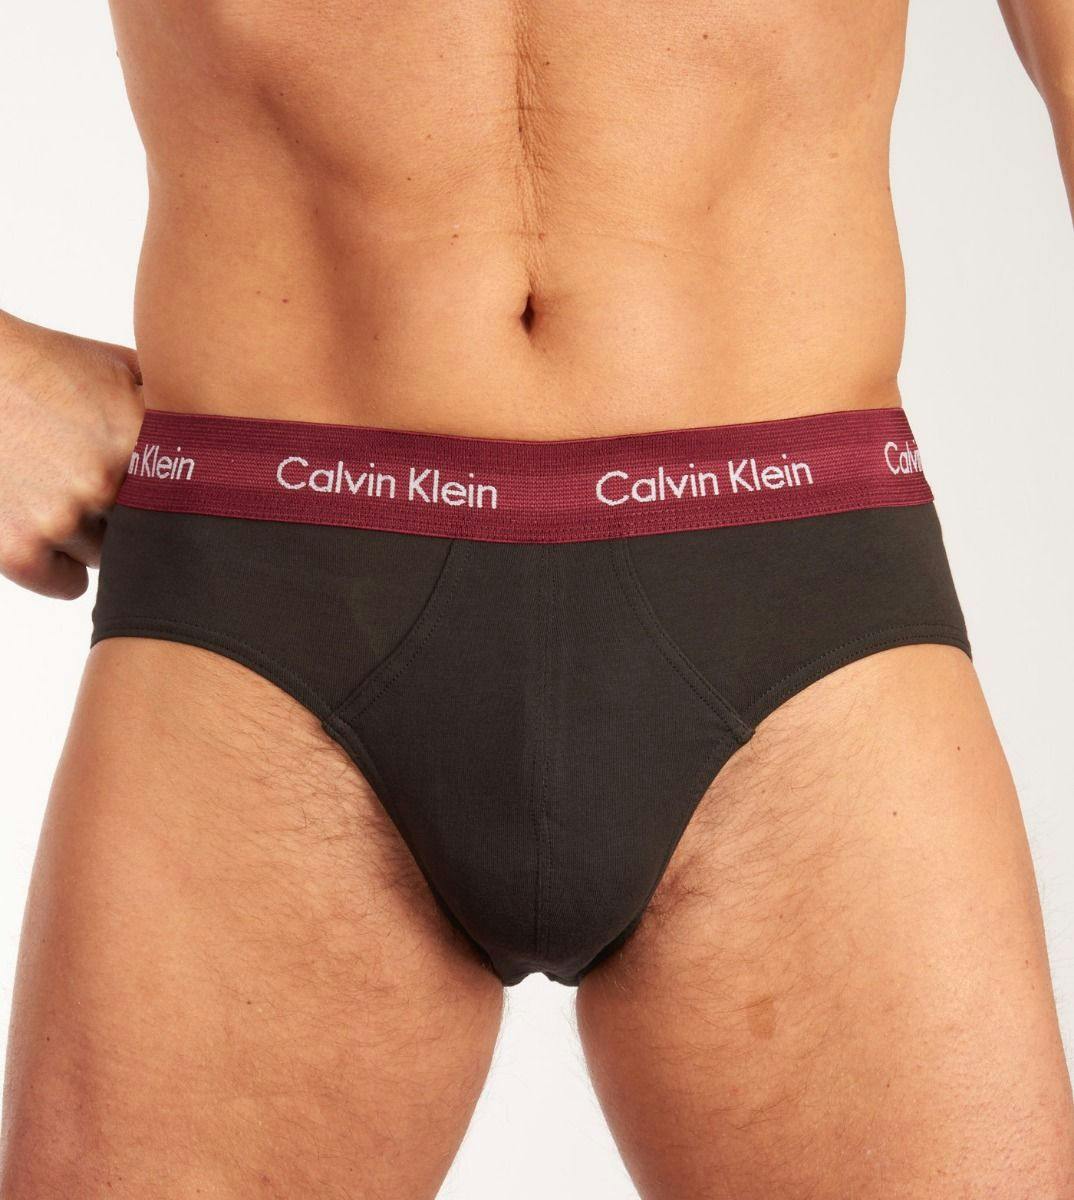 Vroeg achterzijde Moedig Calvin Klein slip 3 pack Cotton Stretch Hip Brief H 0000U2661G-9IJ